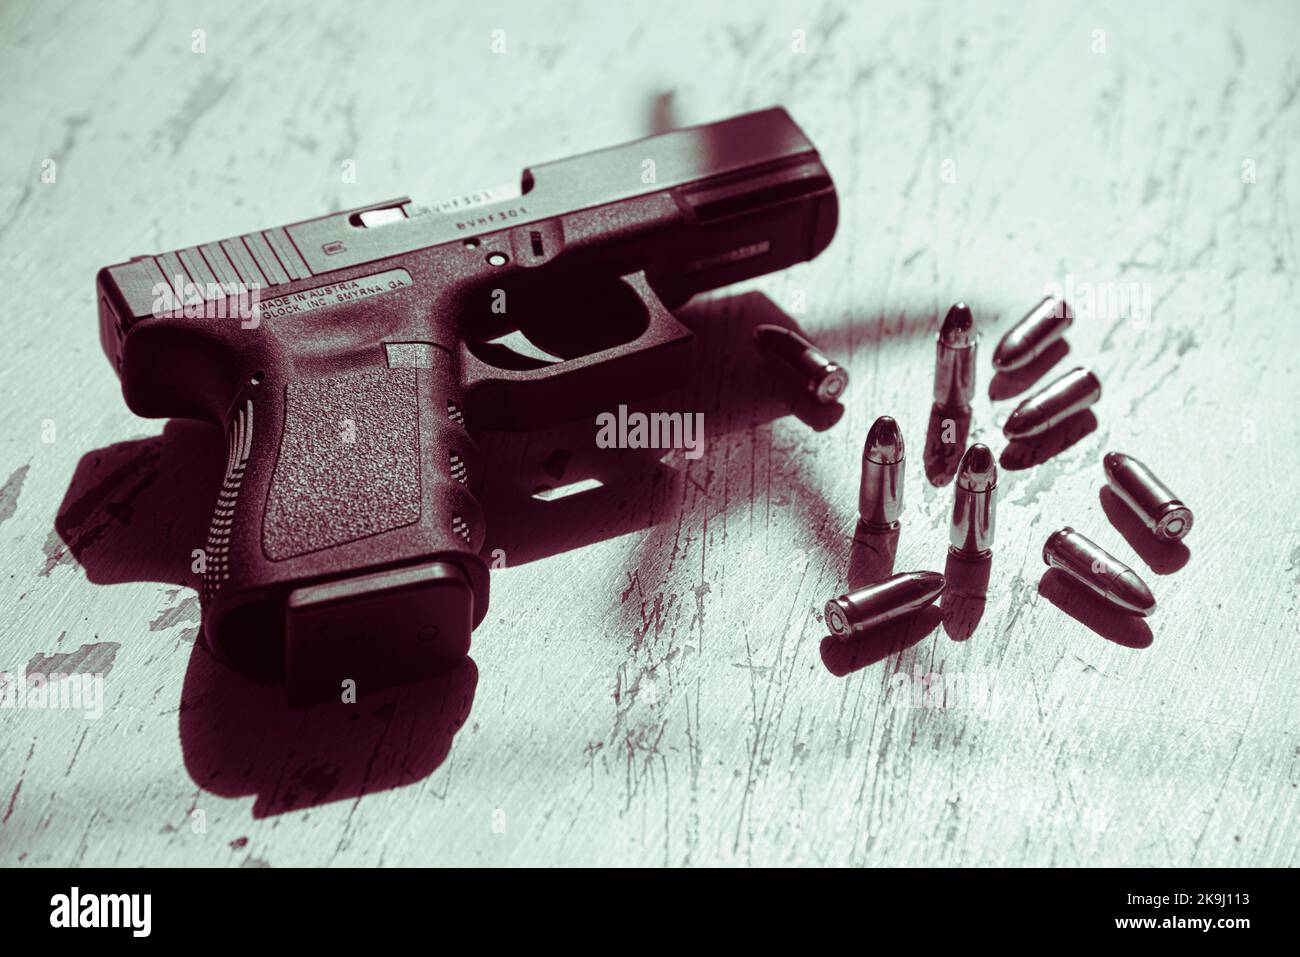 Una pistola Glock 19, prodotta in Austria, si trova su un tavolo insieme a diverse cartucce di munizioni 9mm. Foto Stock